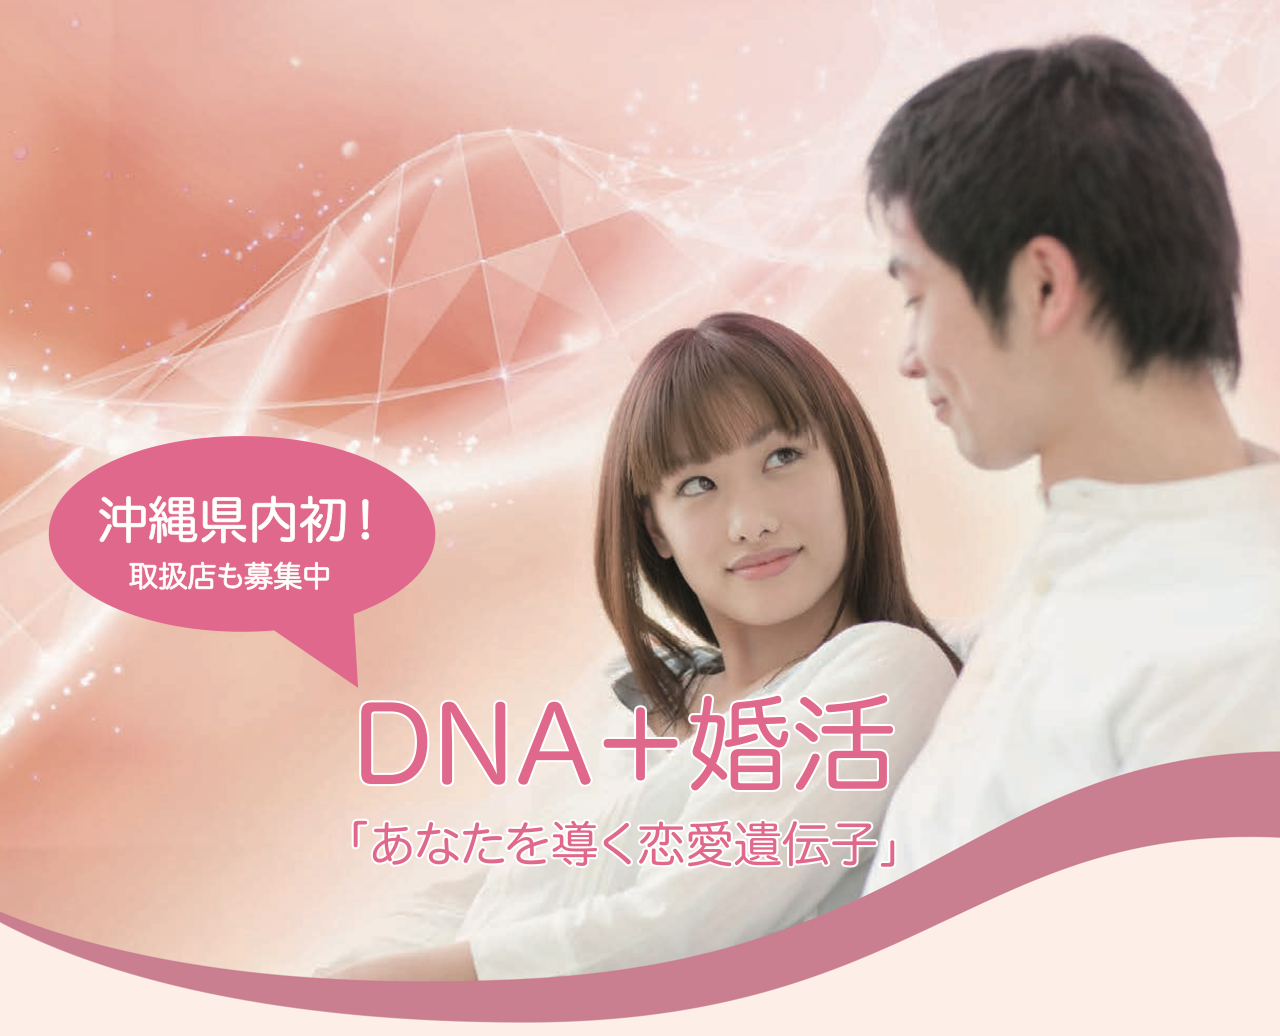 沖縄初 婚活は恋愛遺伝子が決め手 今話題の遺伝子マッチングサービス提供開始 ときめきパートナー株式会社のプレスリリース